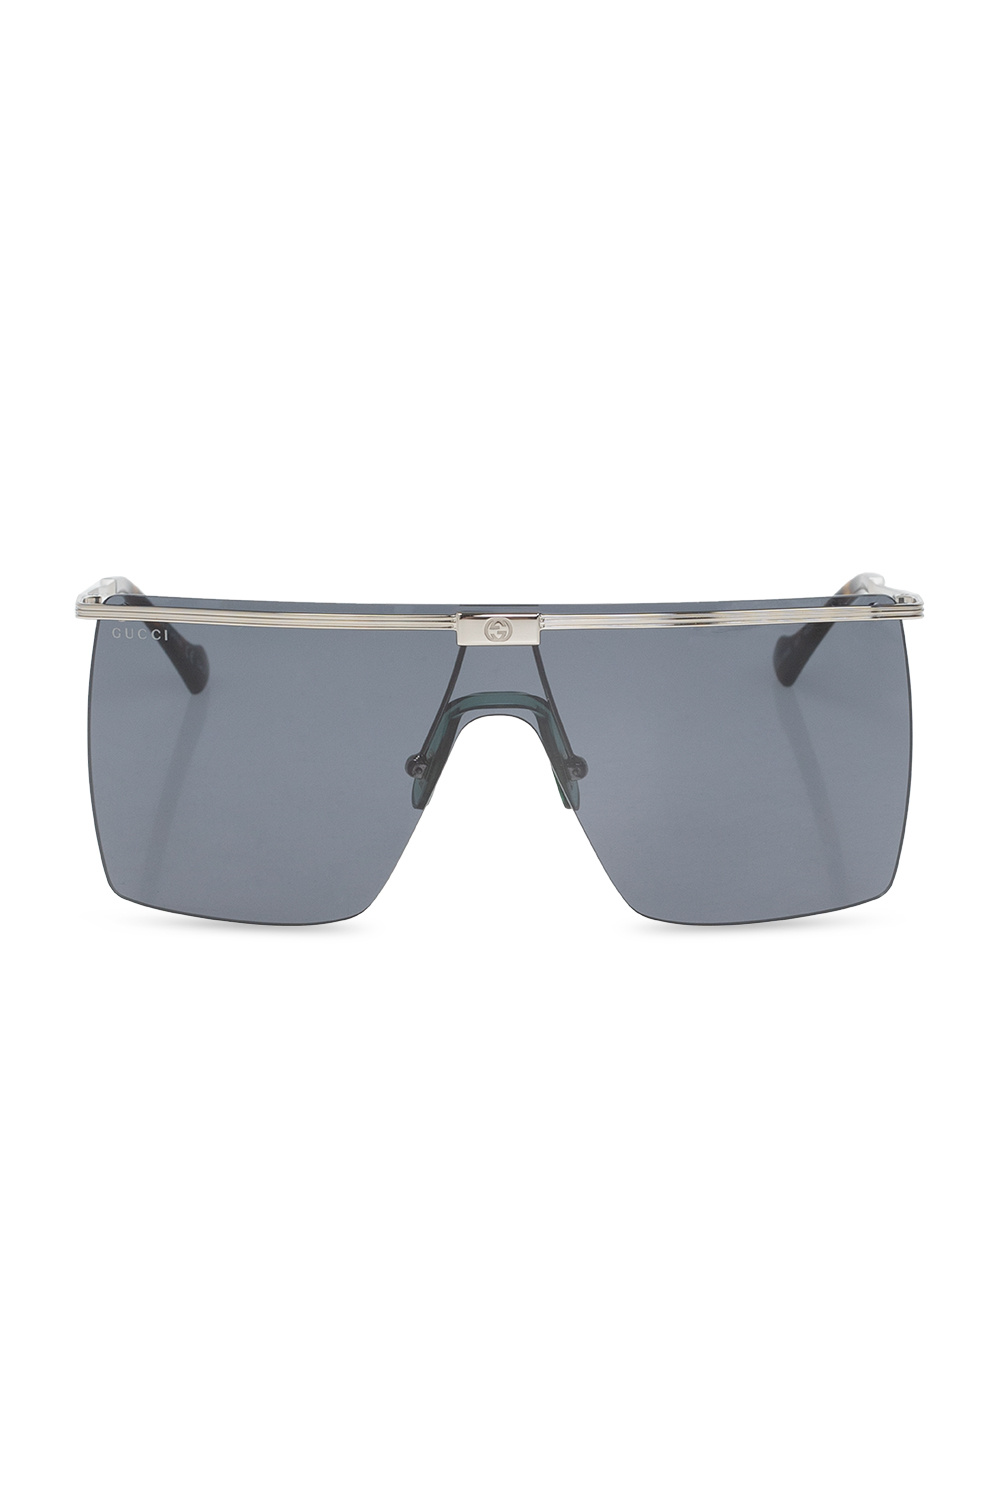 Gucci buy lacoste l218spc rectangle sunglasses